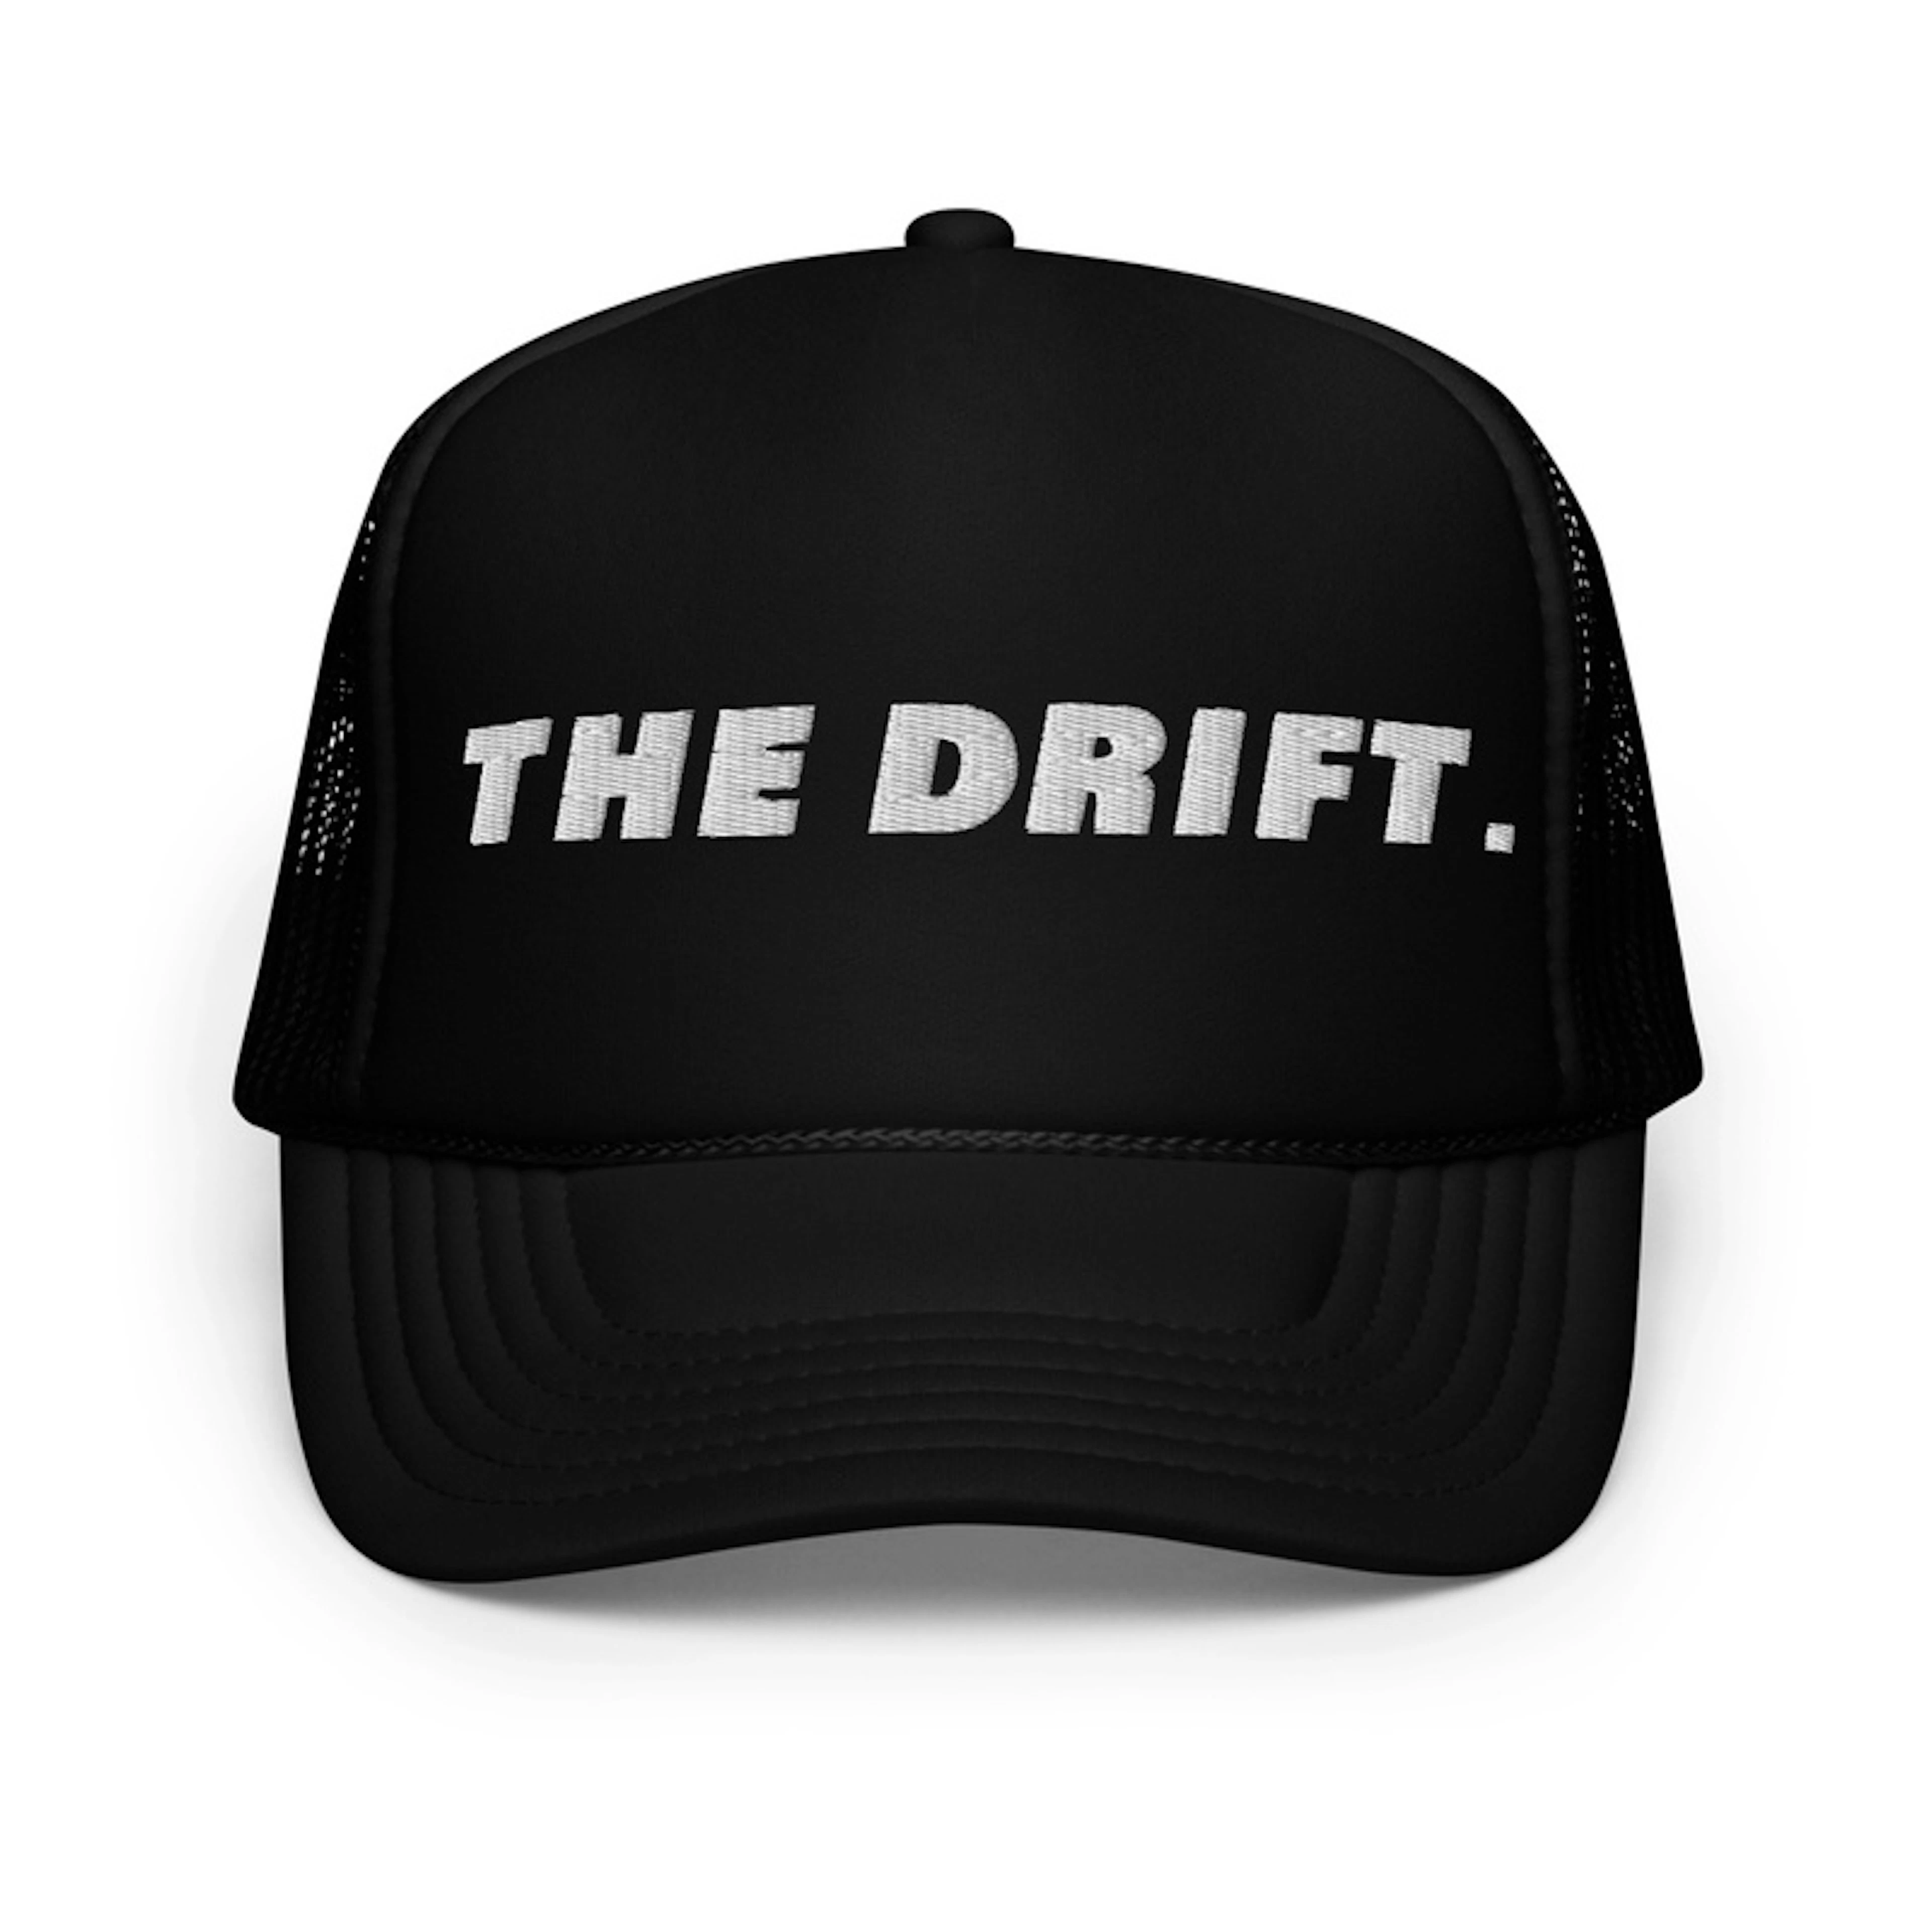 The Drift Trucker